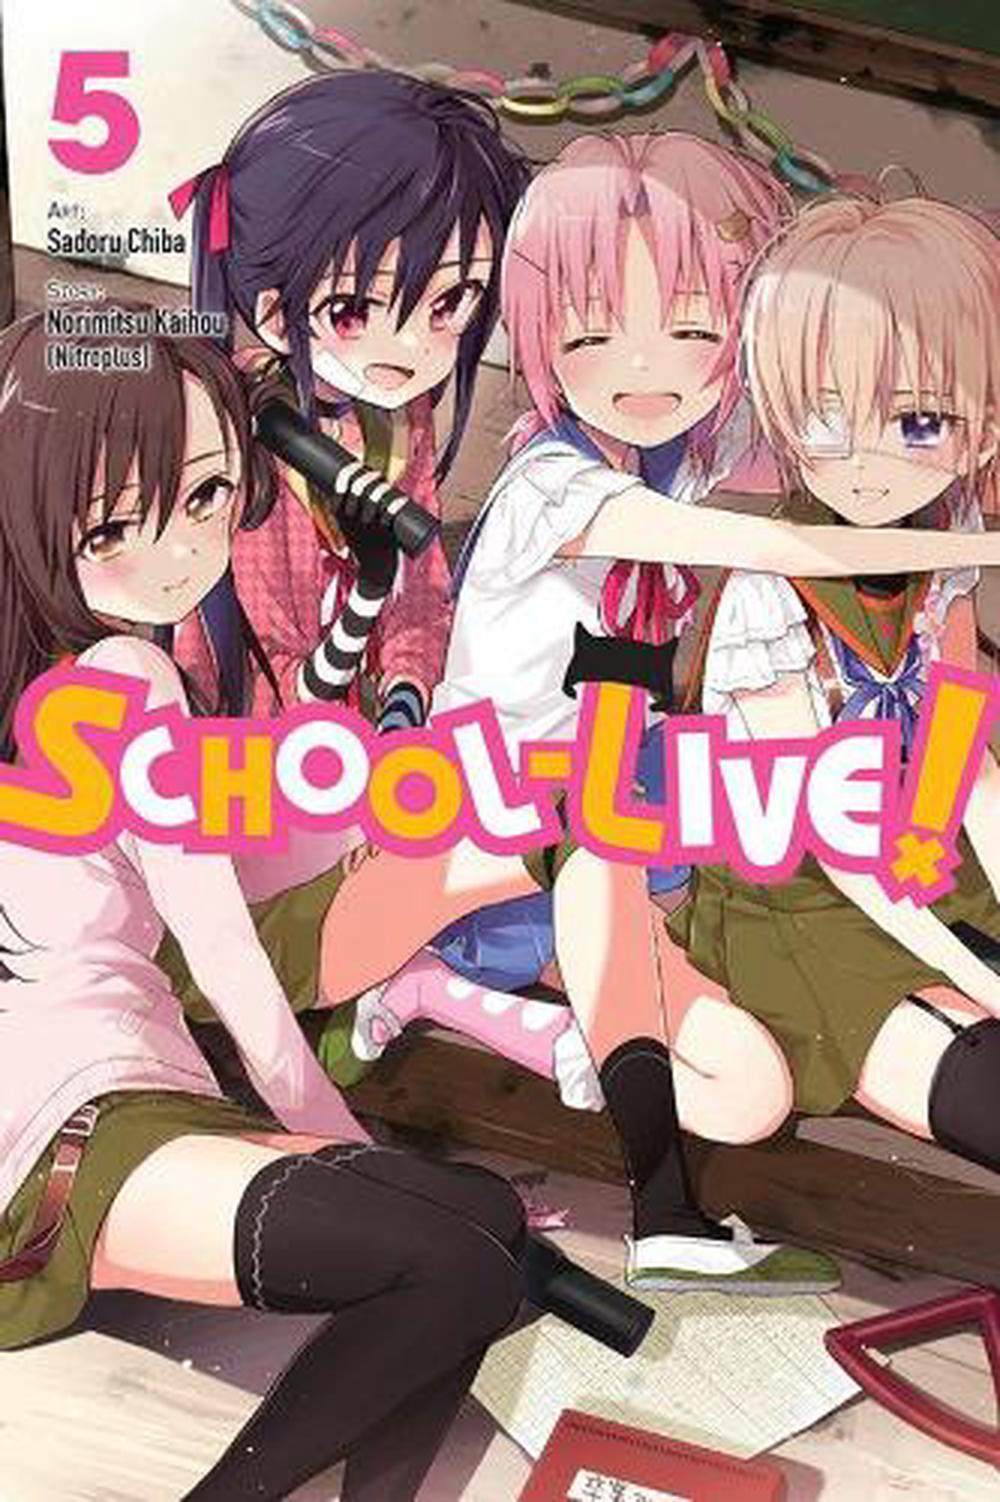 4 Anime Manga Books Sword Art Online, School Live & Clockwork Planet |  eBay